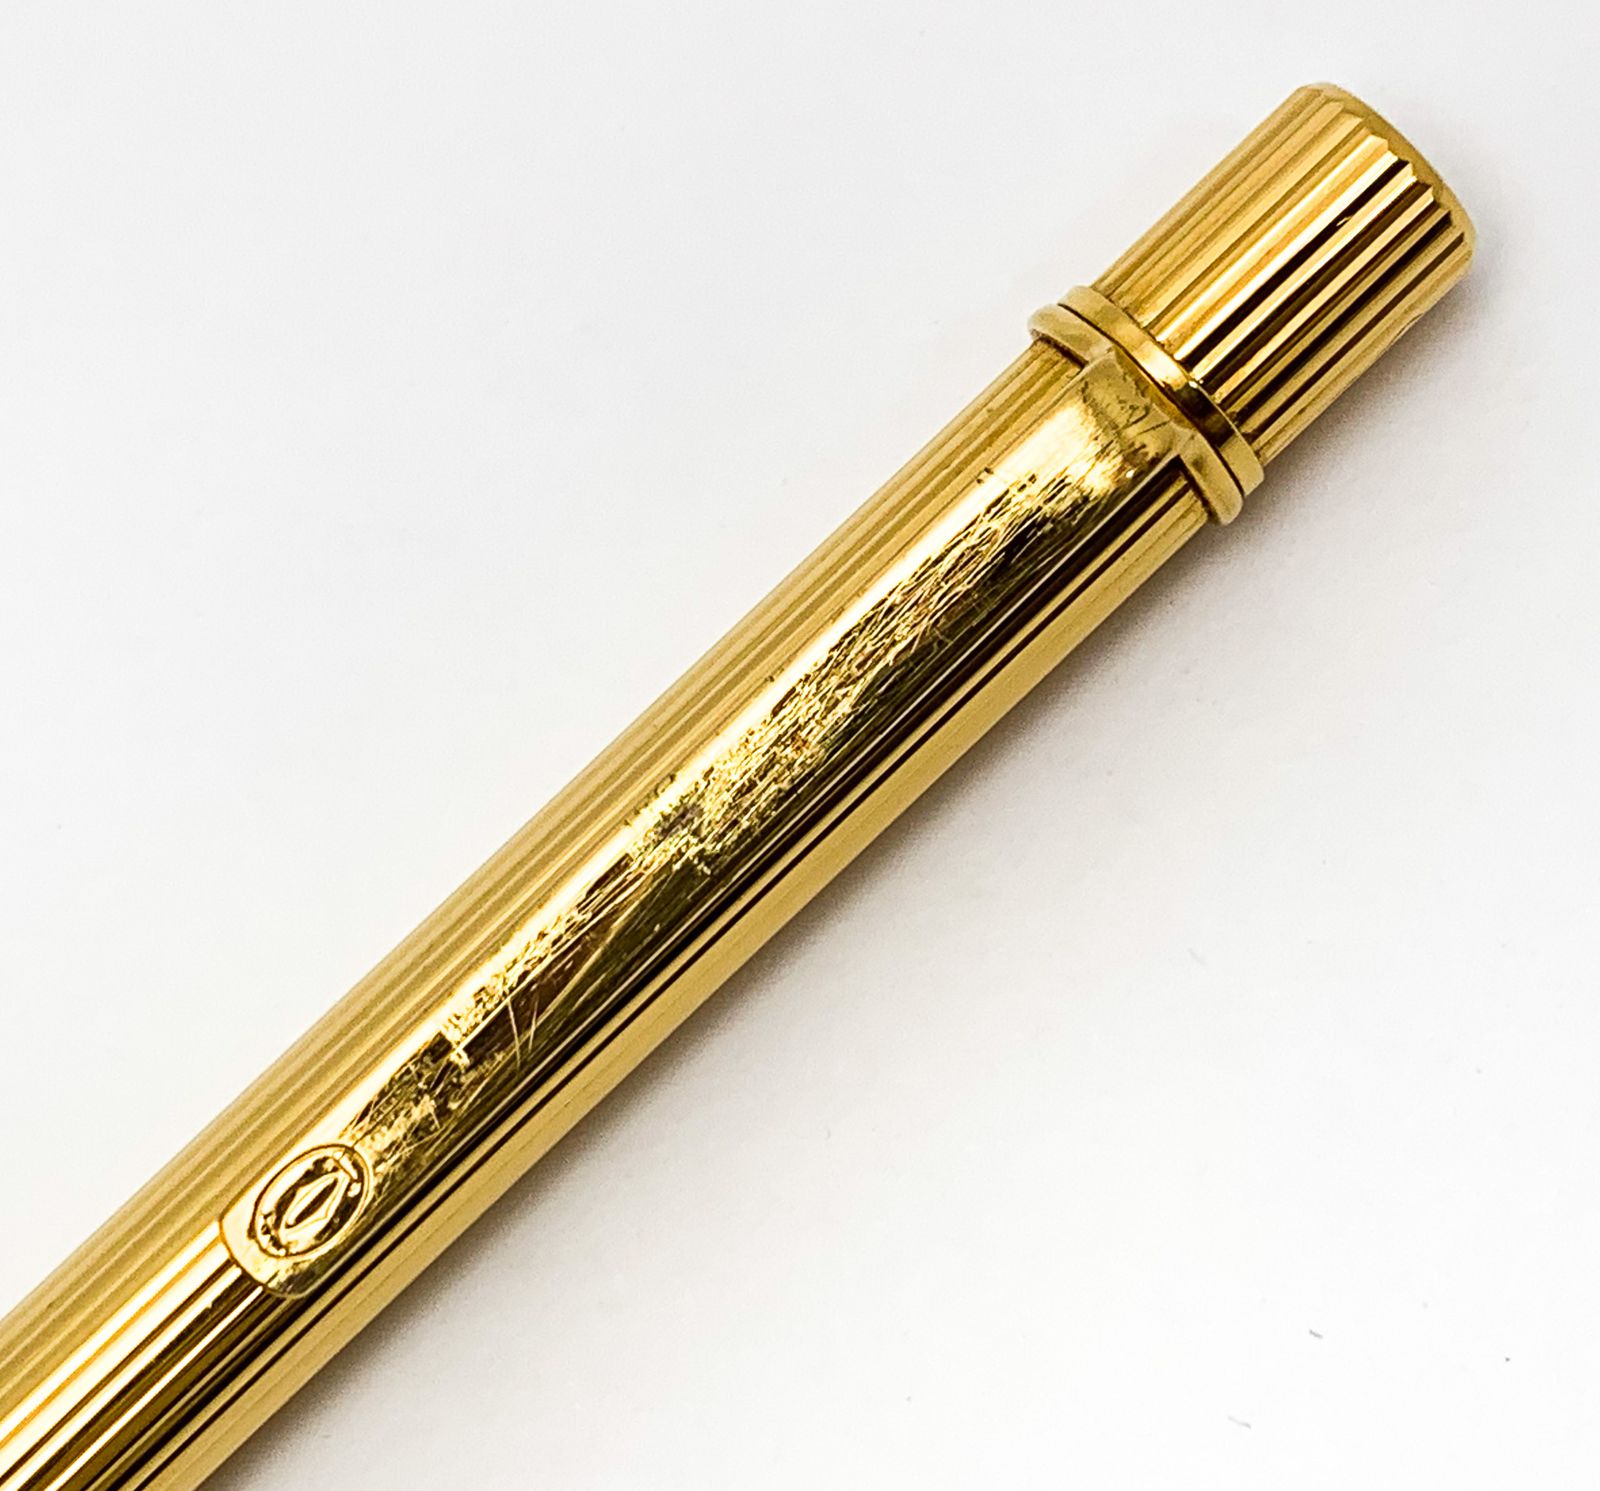 CARTIER カルティエ マスト ドゥ ゴドロン ツイスト式 ゴールド金具 ボールペン 筆記具 ペン ブランド